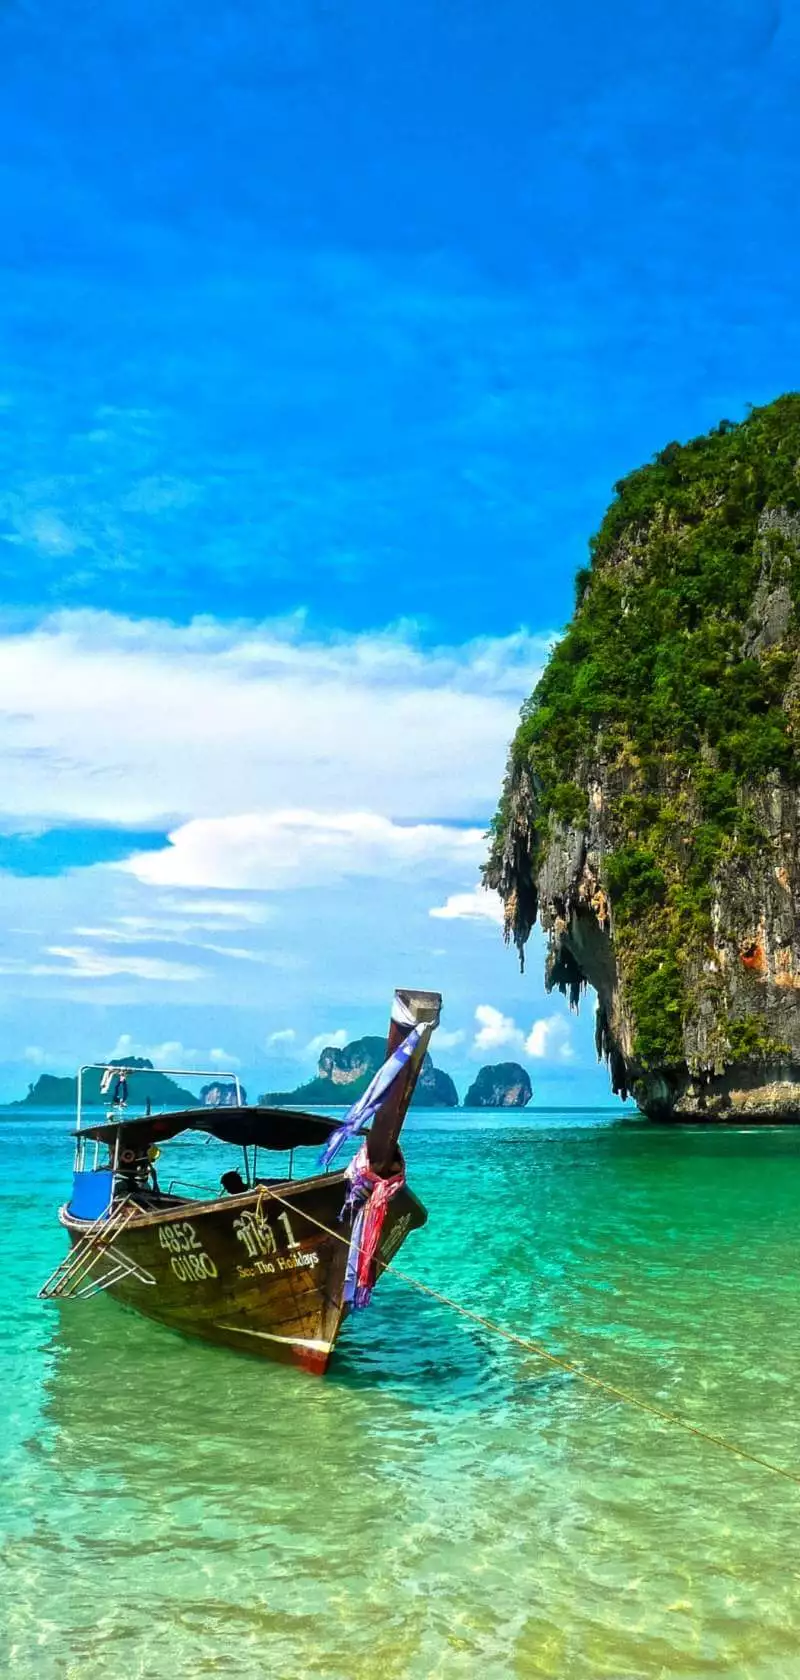 Παραδοσιακή βάρκα της Ταϊλάνδης που είναι αραγμένη στα κρυστάλλινα νερά του νησιού και εξυπηρετεί στη μεταφορά των ταξιδιωτών